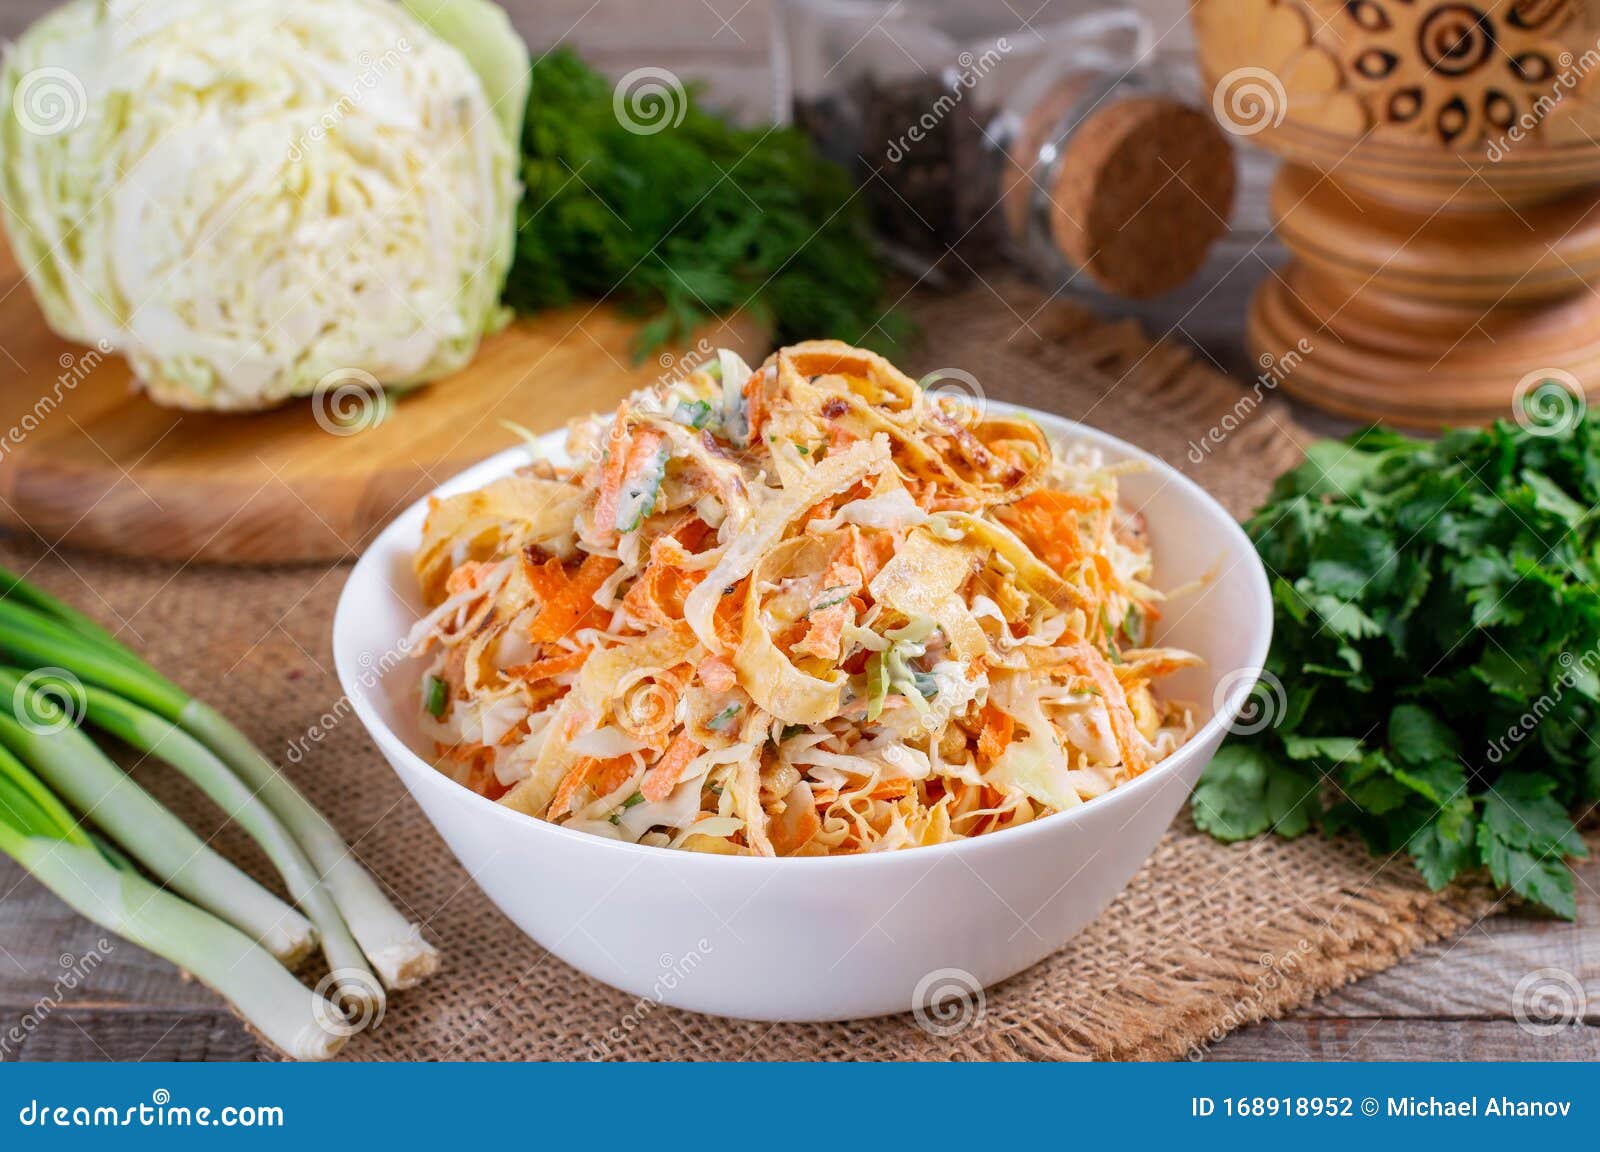 Рецепт капусты свежей с яйцом. Капустный салат. Салат из белокочанной капусты. Салат с капустой и морковкой. Салат из белокочанной капусты с морковью.